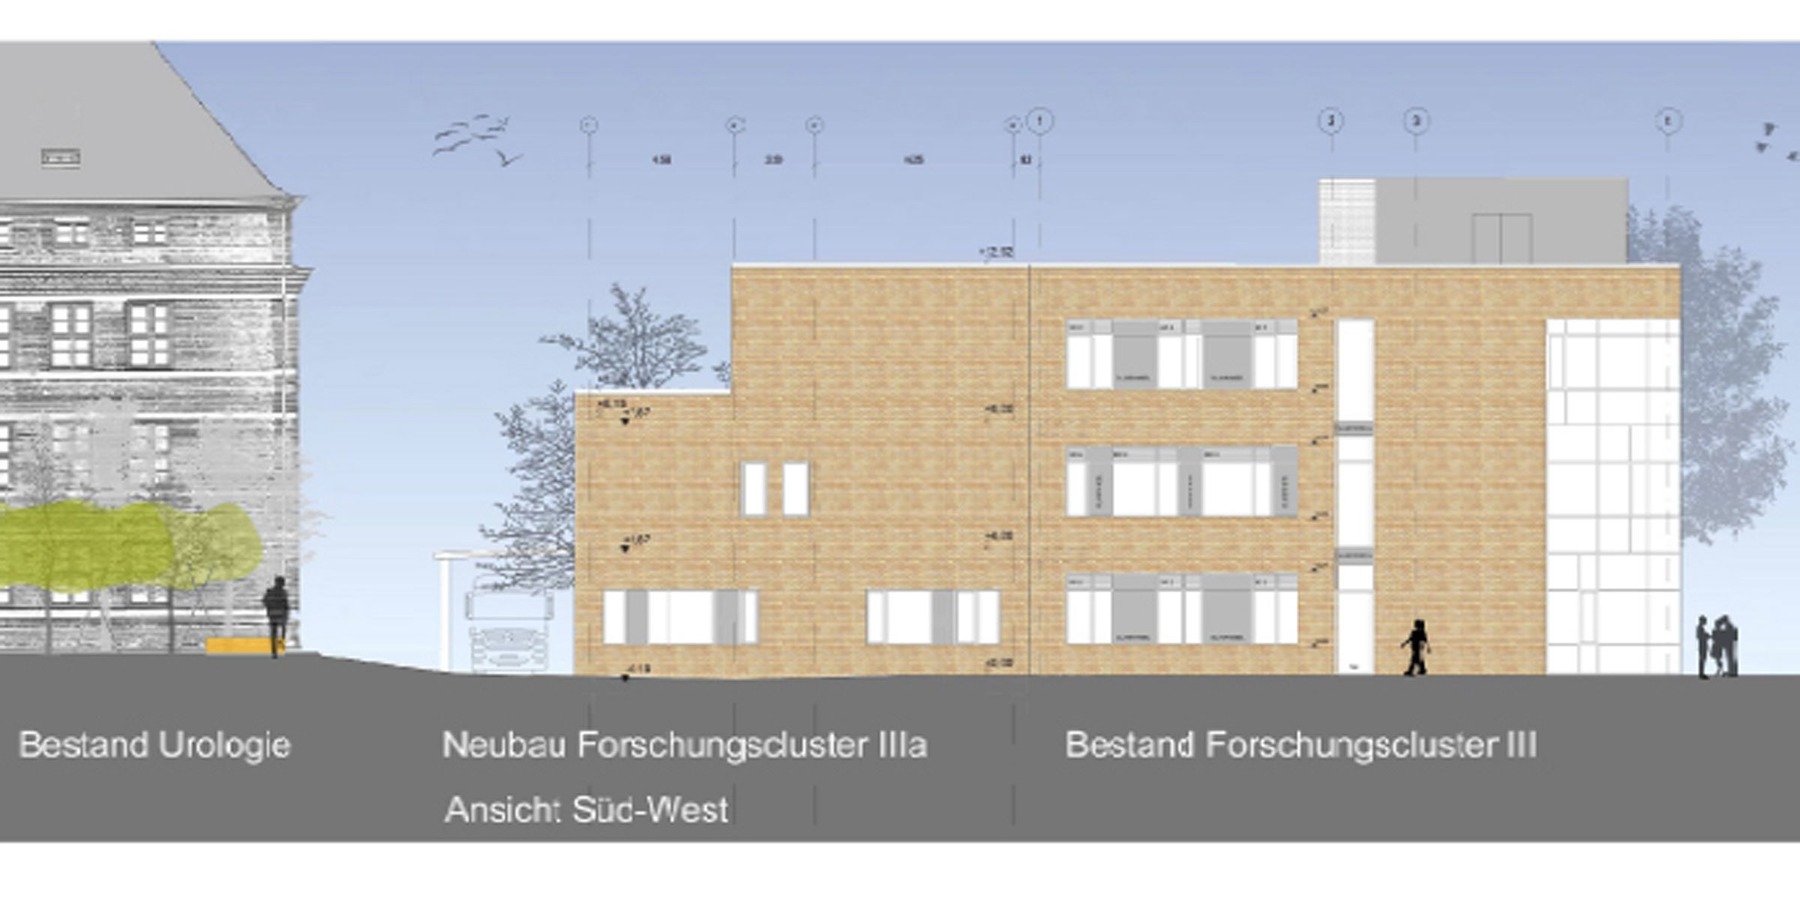 Ansicht Süd-West - Der Neubau des Forschungsclusters IIIa wird direkt an das 2012 fertig gestellte Gebäude Forschungscluster III angebaut. © 2016 tönis + schroeter + jansen freie architekten gmbh, Lübeck